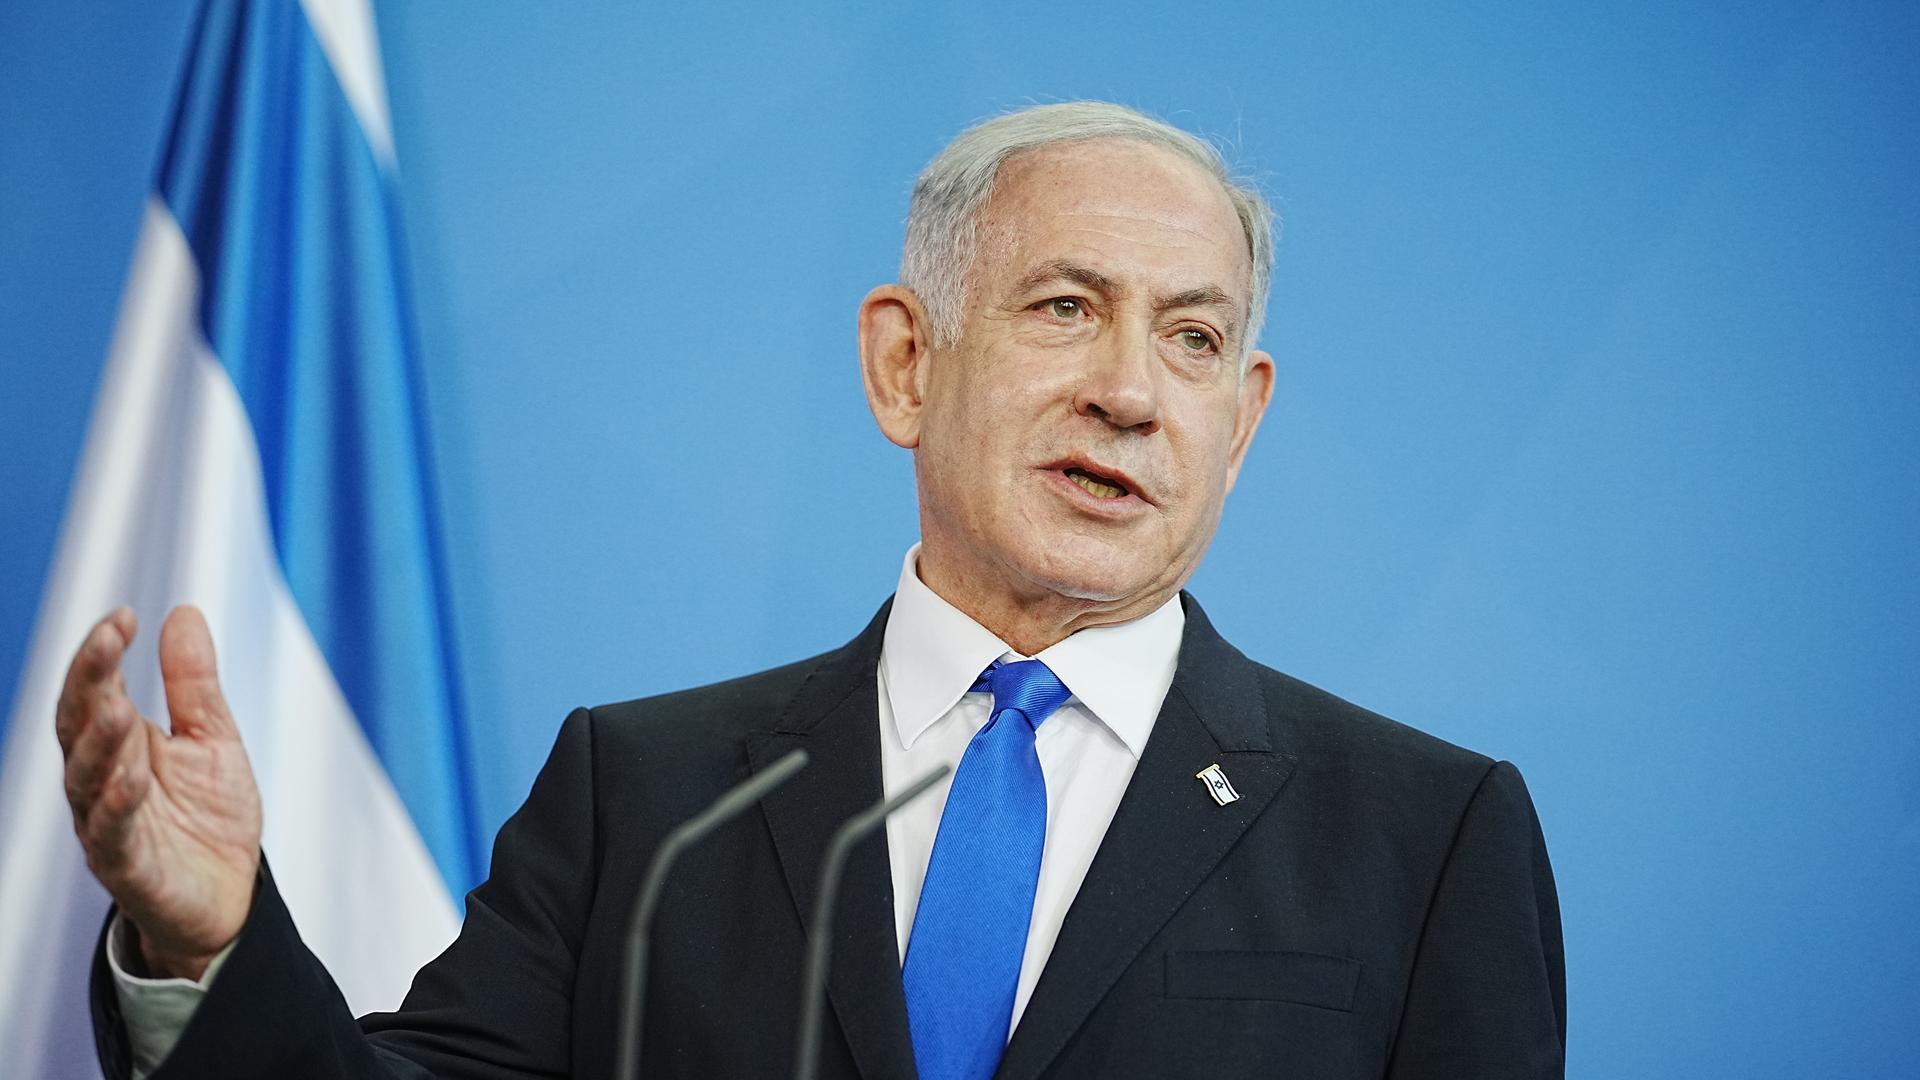 kryeministri izraelit thote se shpreson per zgjidhje diplomatike te konfliktit dhe se gaza intensive e luftes se izraelit me hamasin eshte afer fundit